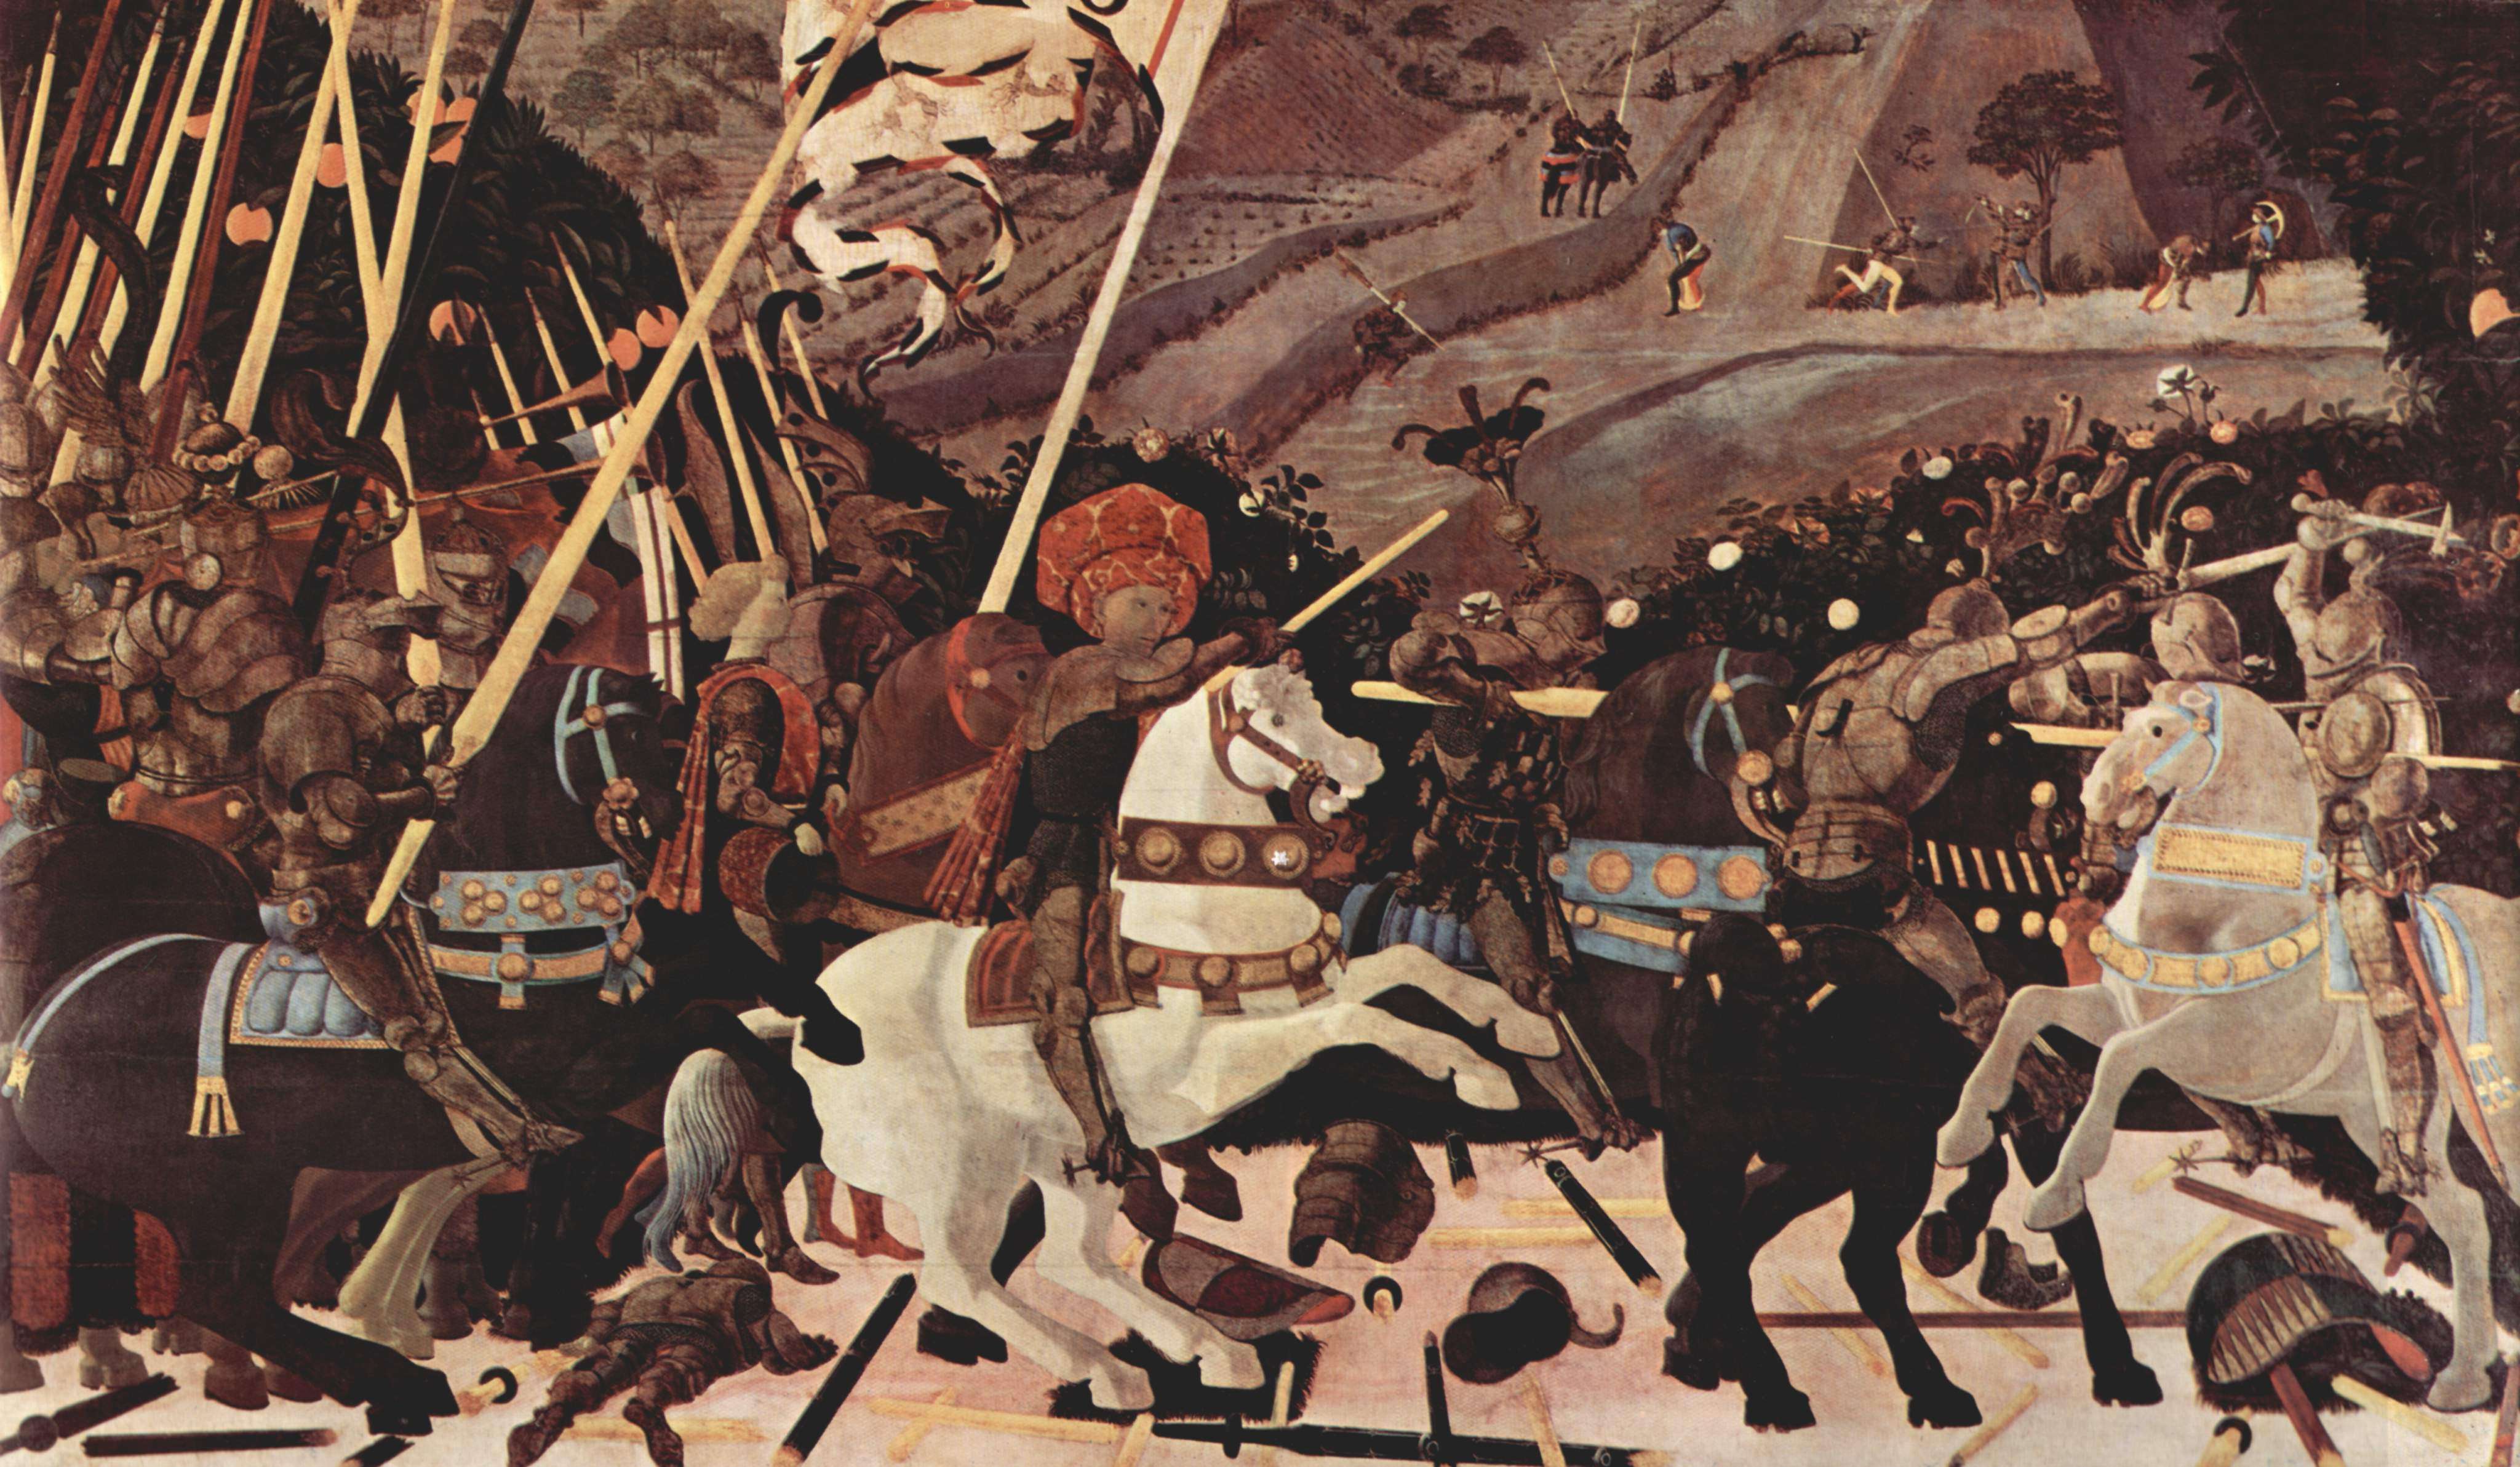 Πάολο Ουτσέλλο (Paolo Uccello, 15 Ιουνίου 1397 - 10 Δεκεμβρίου 1475). Μάχη του Σαν Ρομάνο: Ο Niccolò da Tolentino οδηγεί τους Φλωρεντινούς. Λονδίνο, Εθνική Πινακοθήκη.